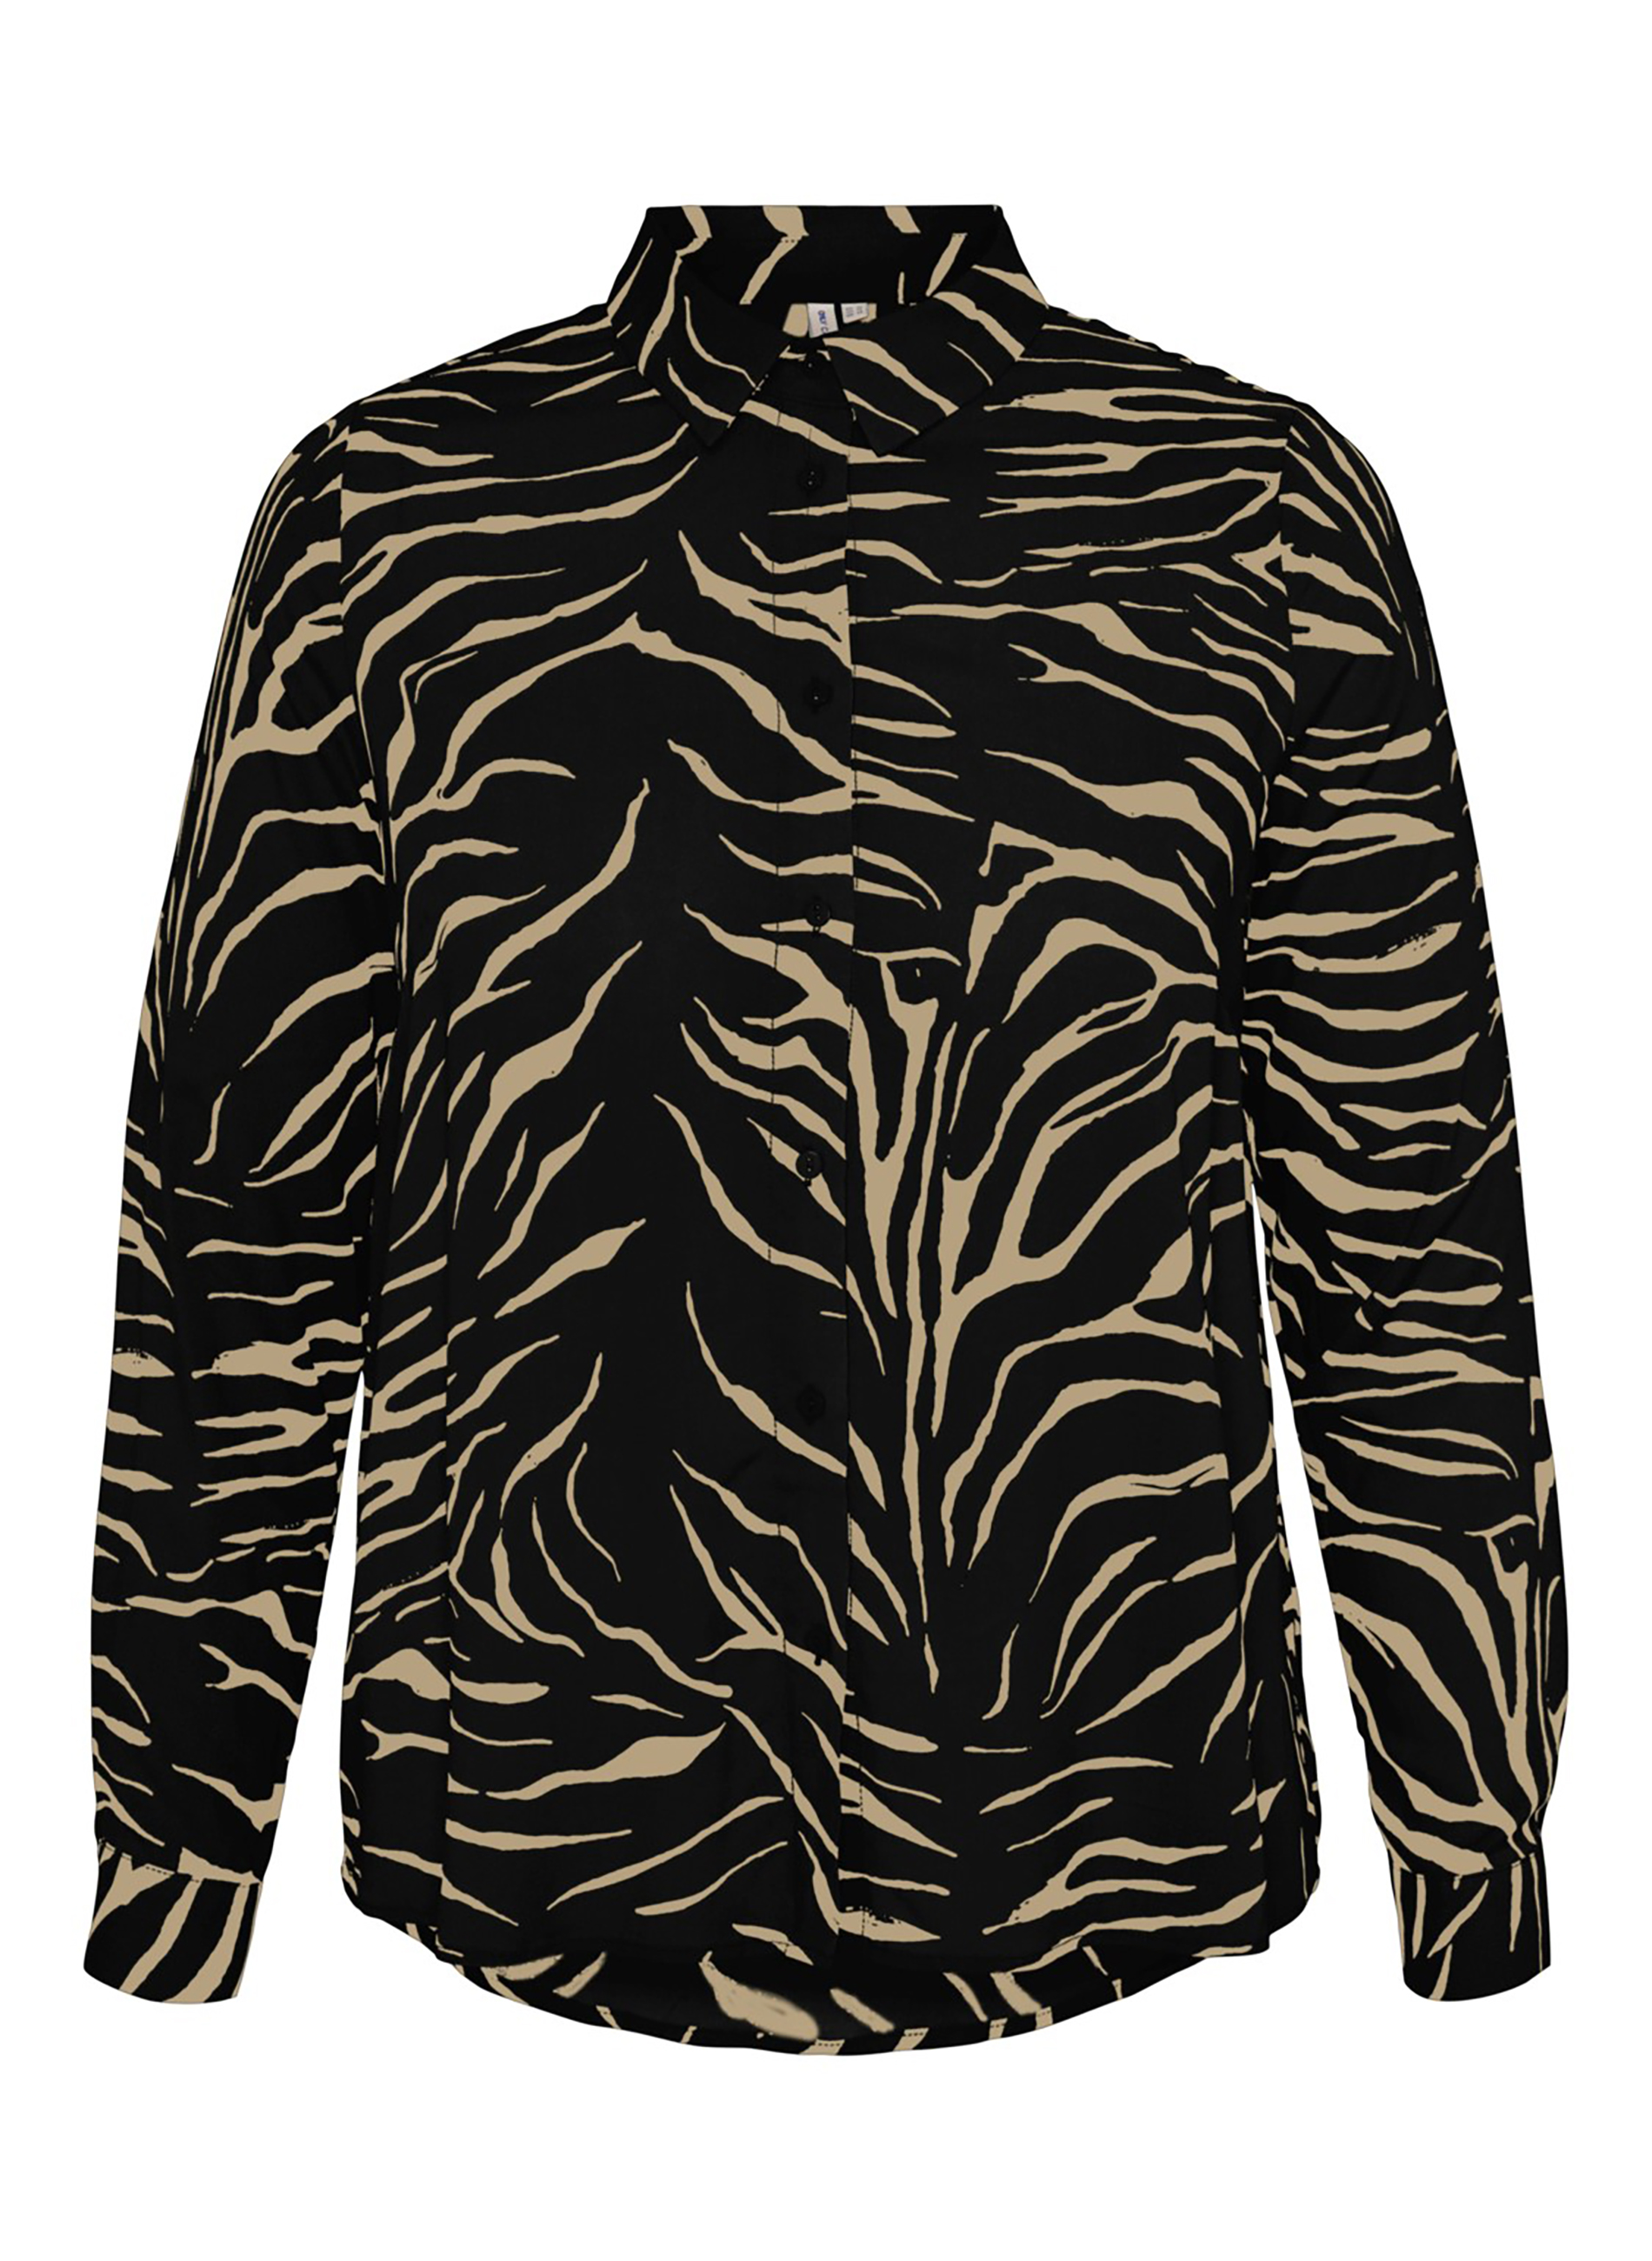 Πουκάμισο από 100% βισκόζη με μακρύ μανίκι, με zebra ντεσεν σε μαύρο χρώμα, συνδυάζεται άψογα με κάθε outfit!